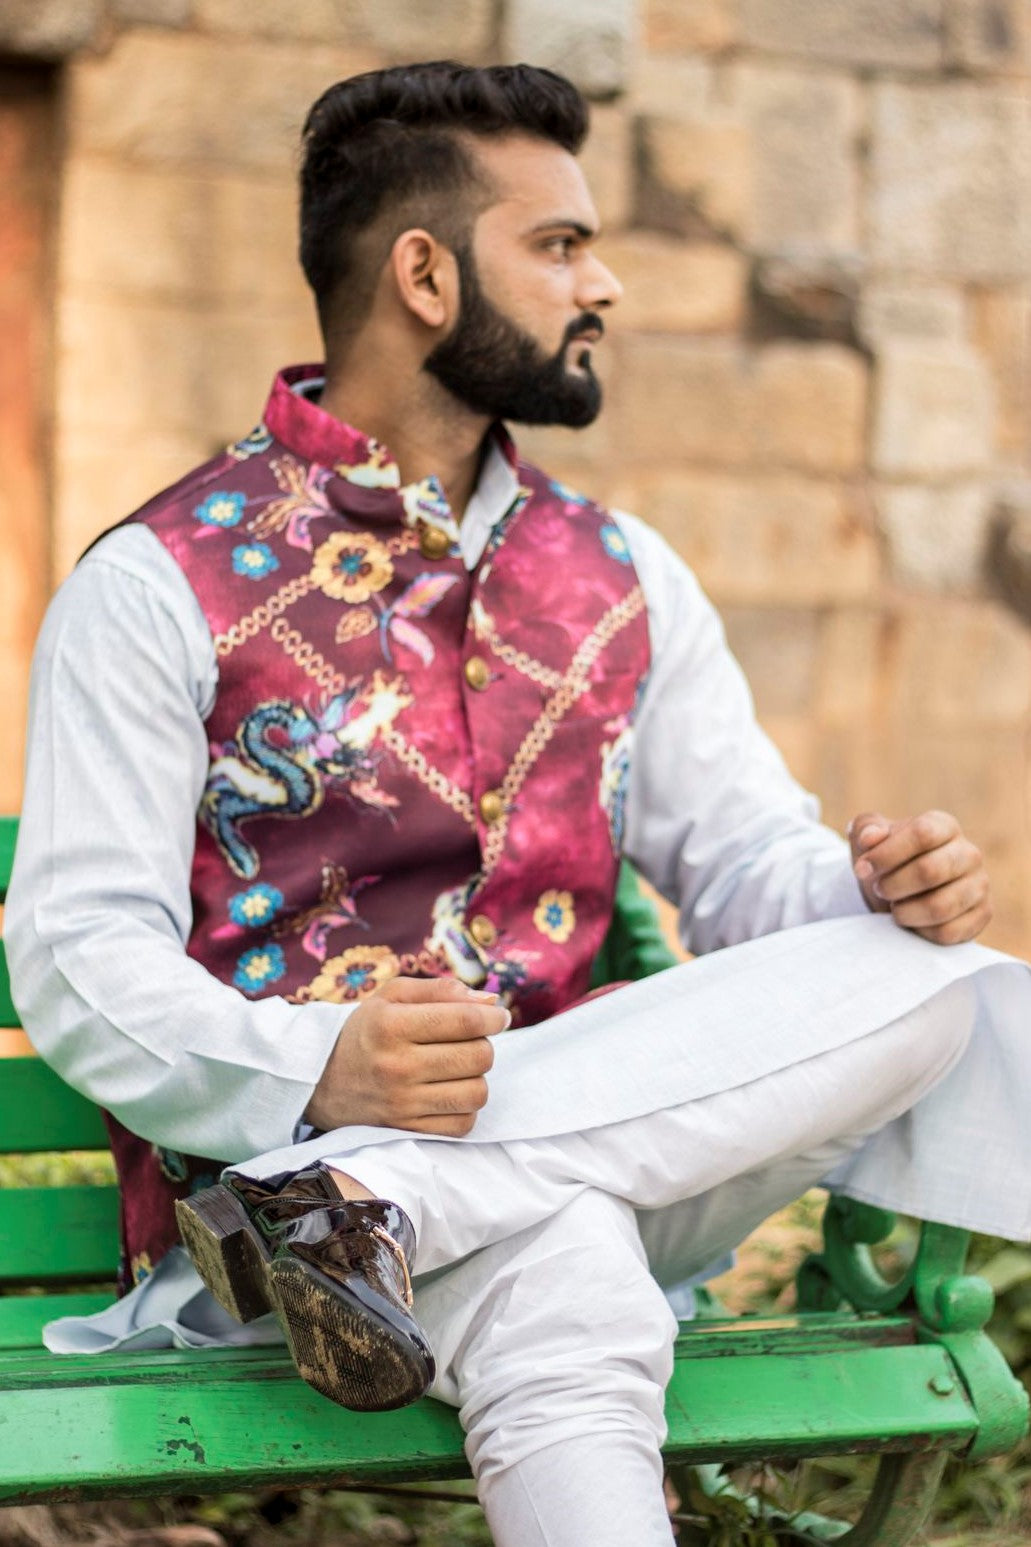 Imported Rayon MulticolouRed Modi Nehru Jacket